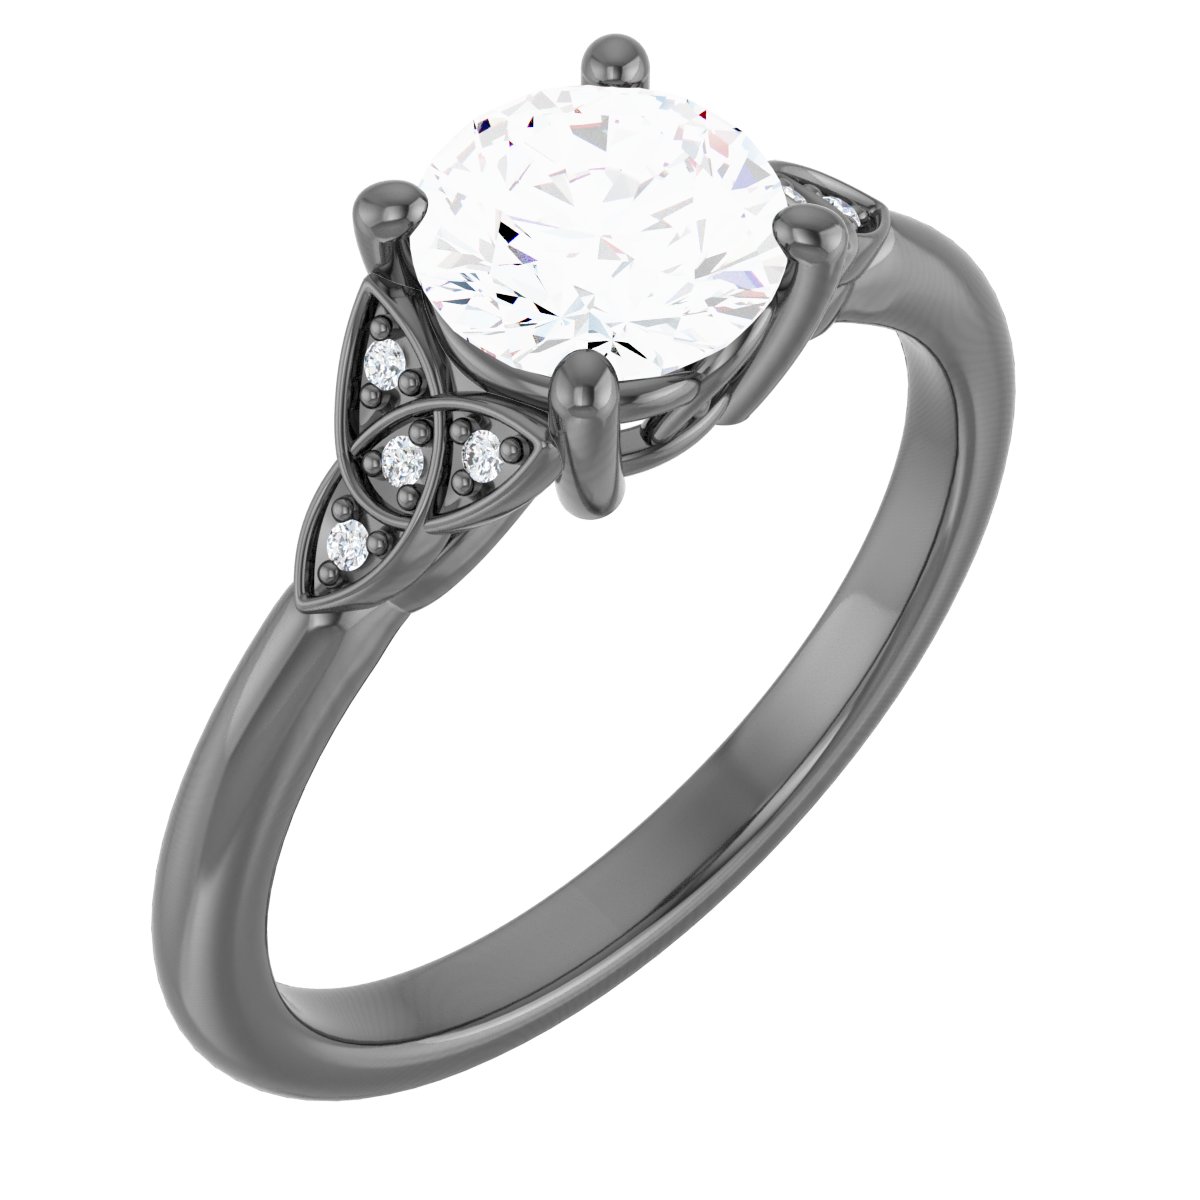 Celtic-Inspired Engagement Ring